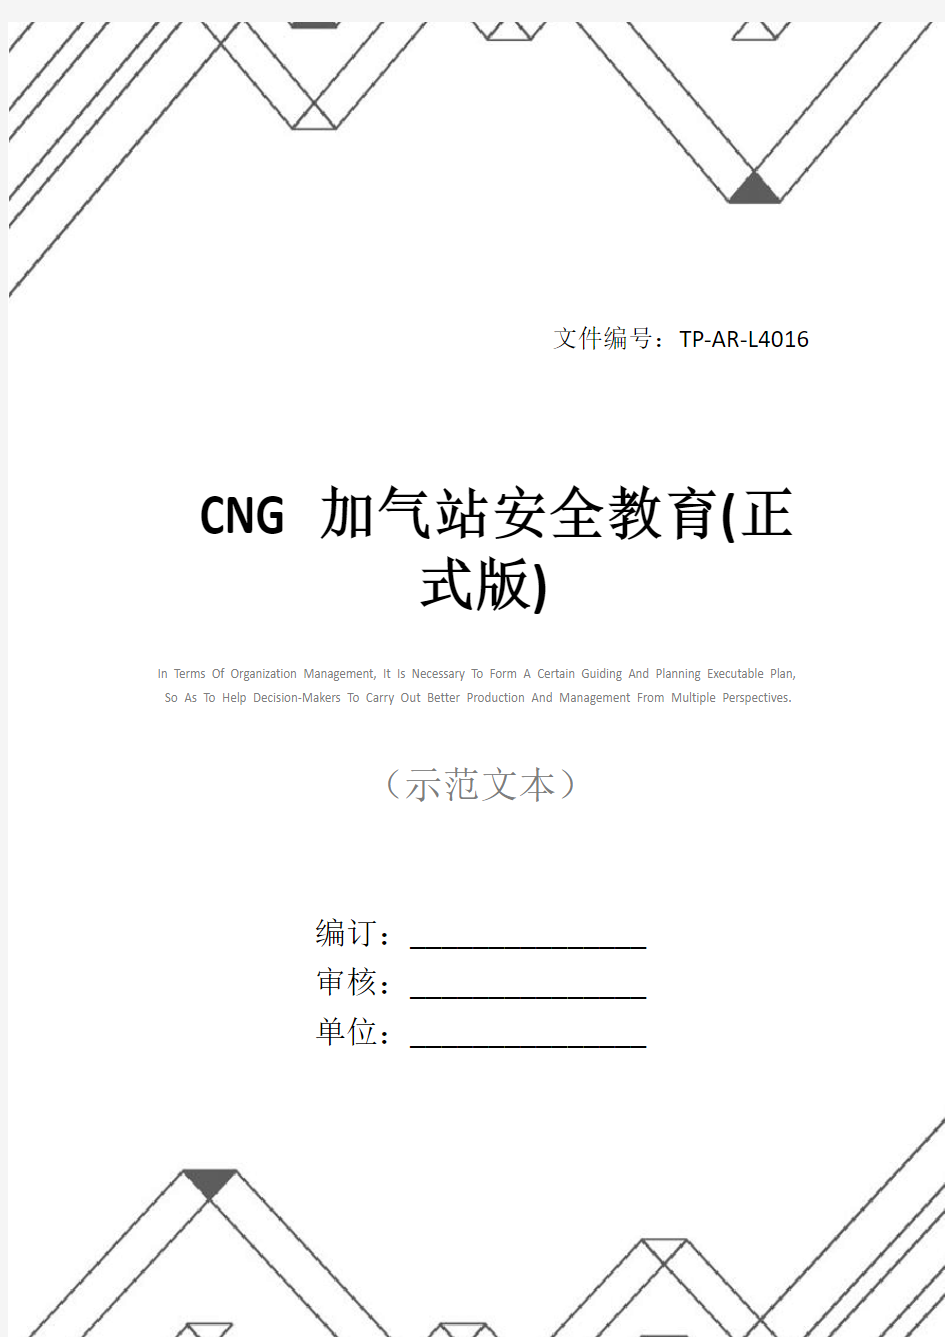 CNG加气站安全教育(正式版)